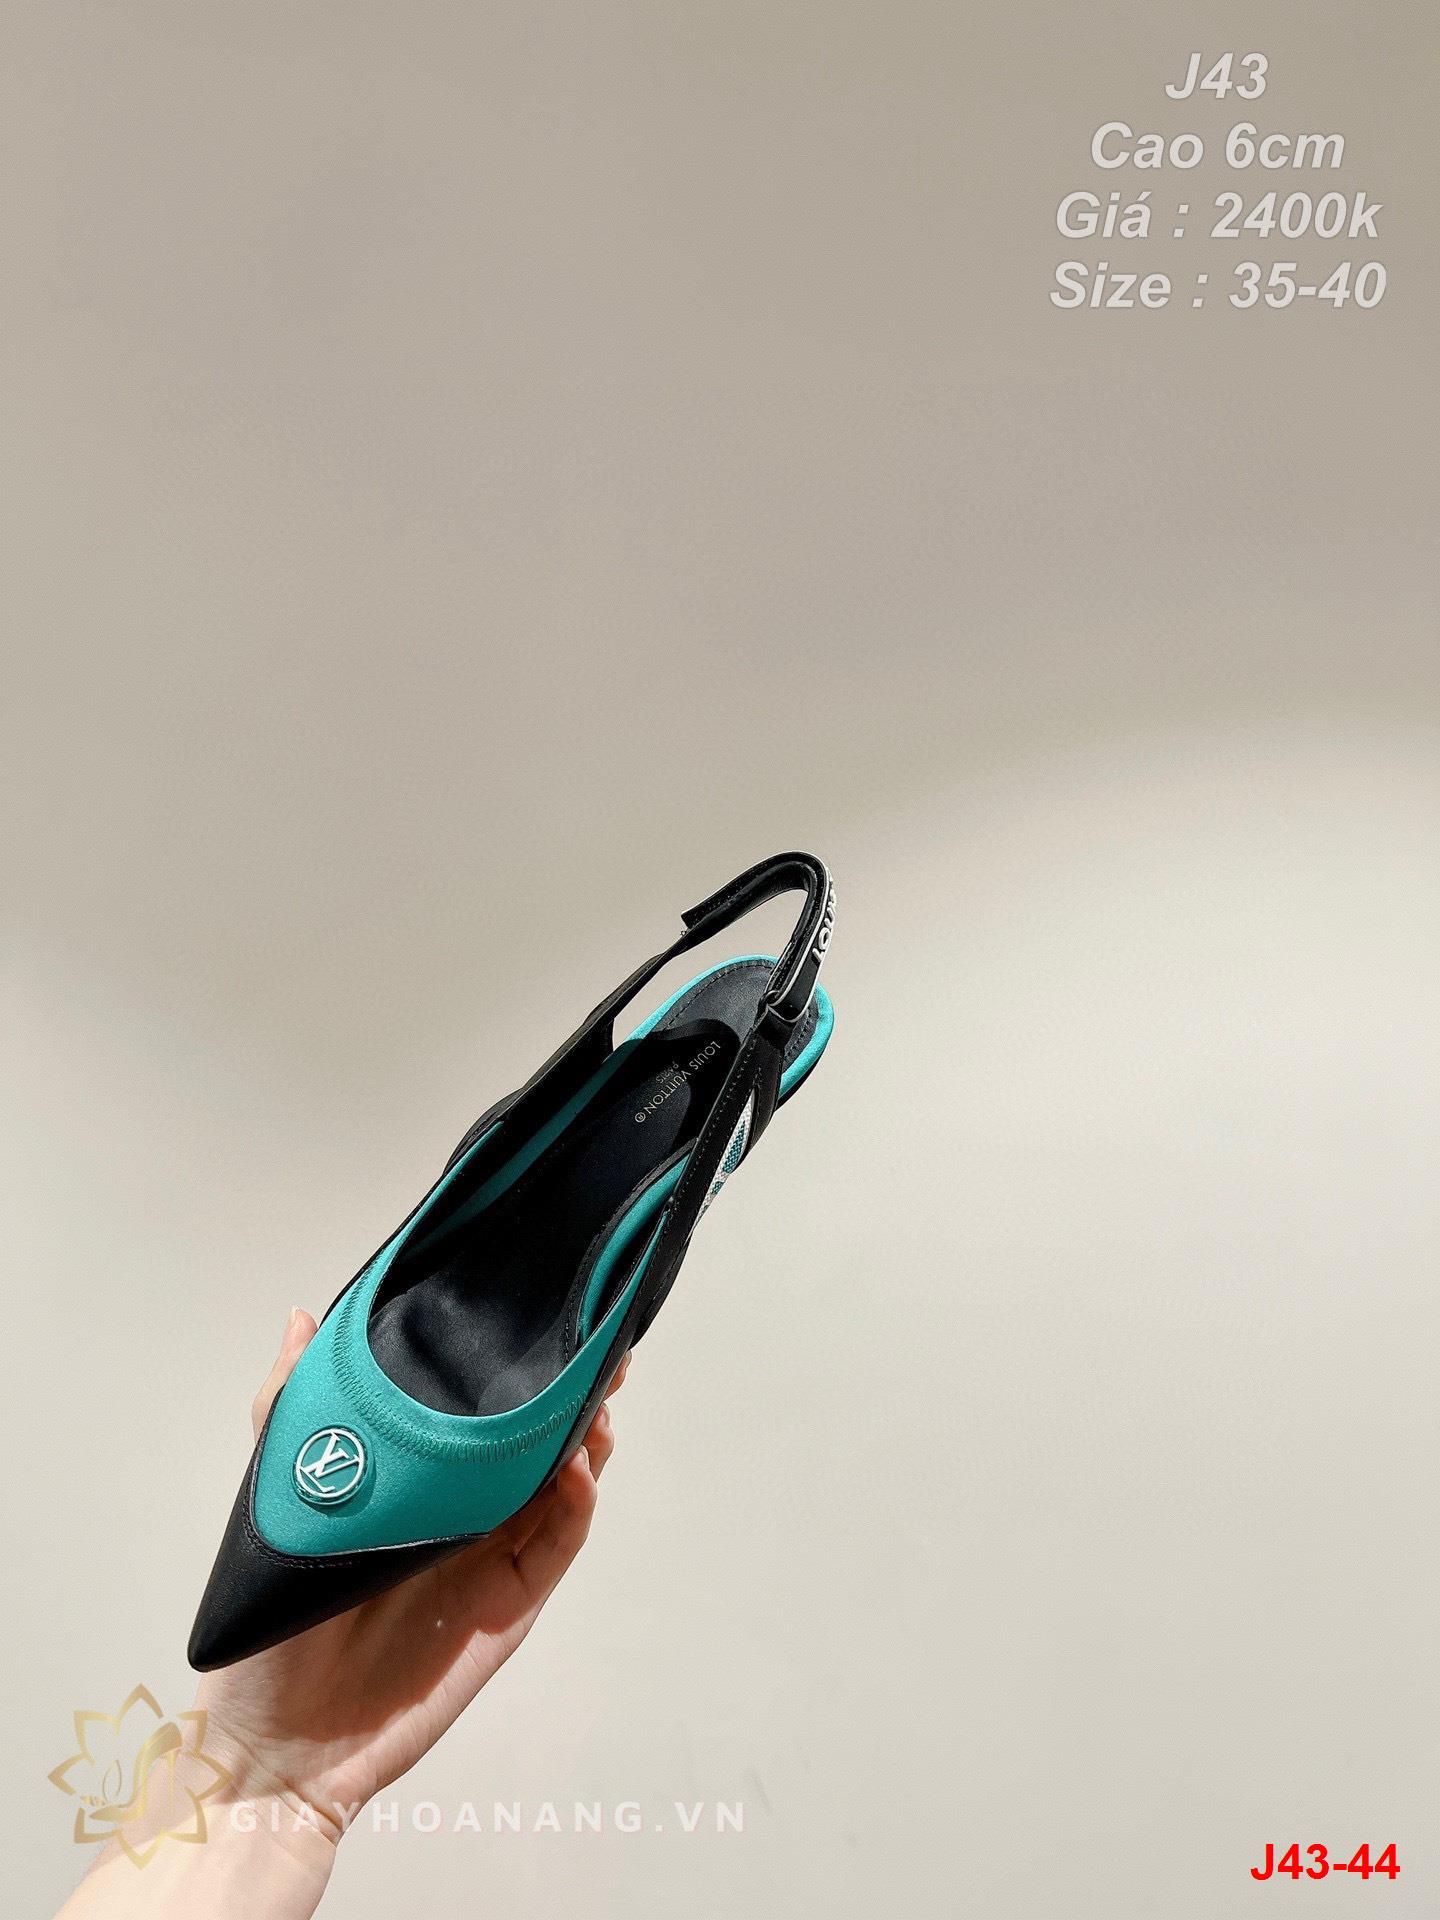 J43-44 Louis Vuitton sandal cao 6cm siêu cấp